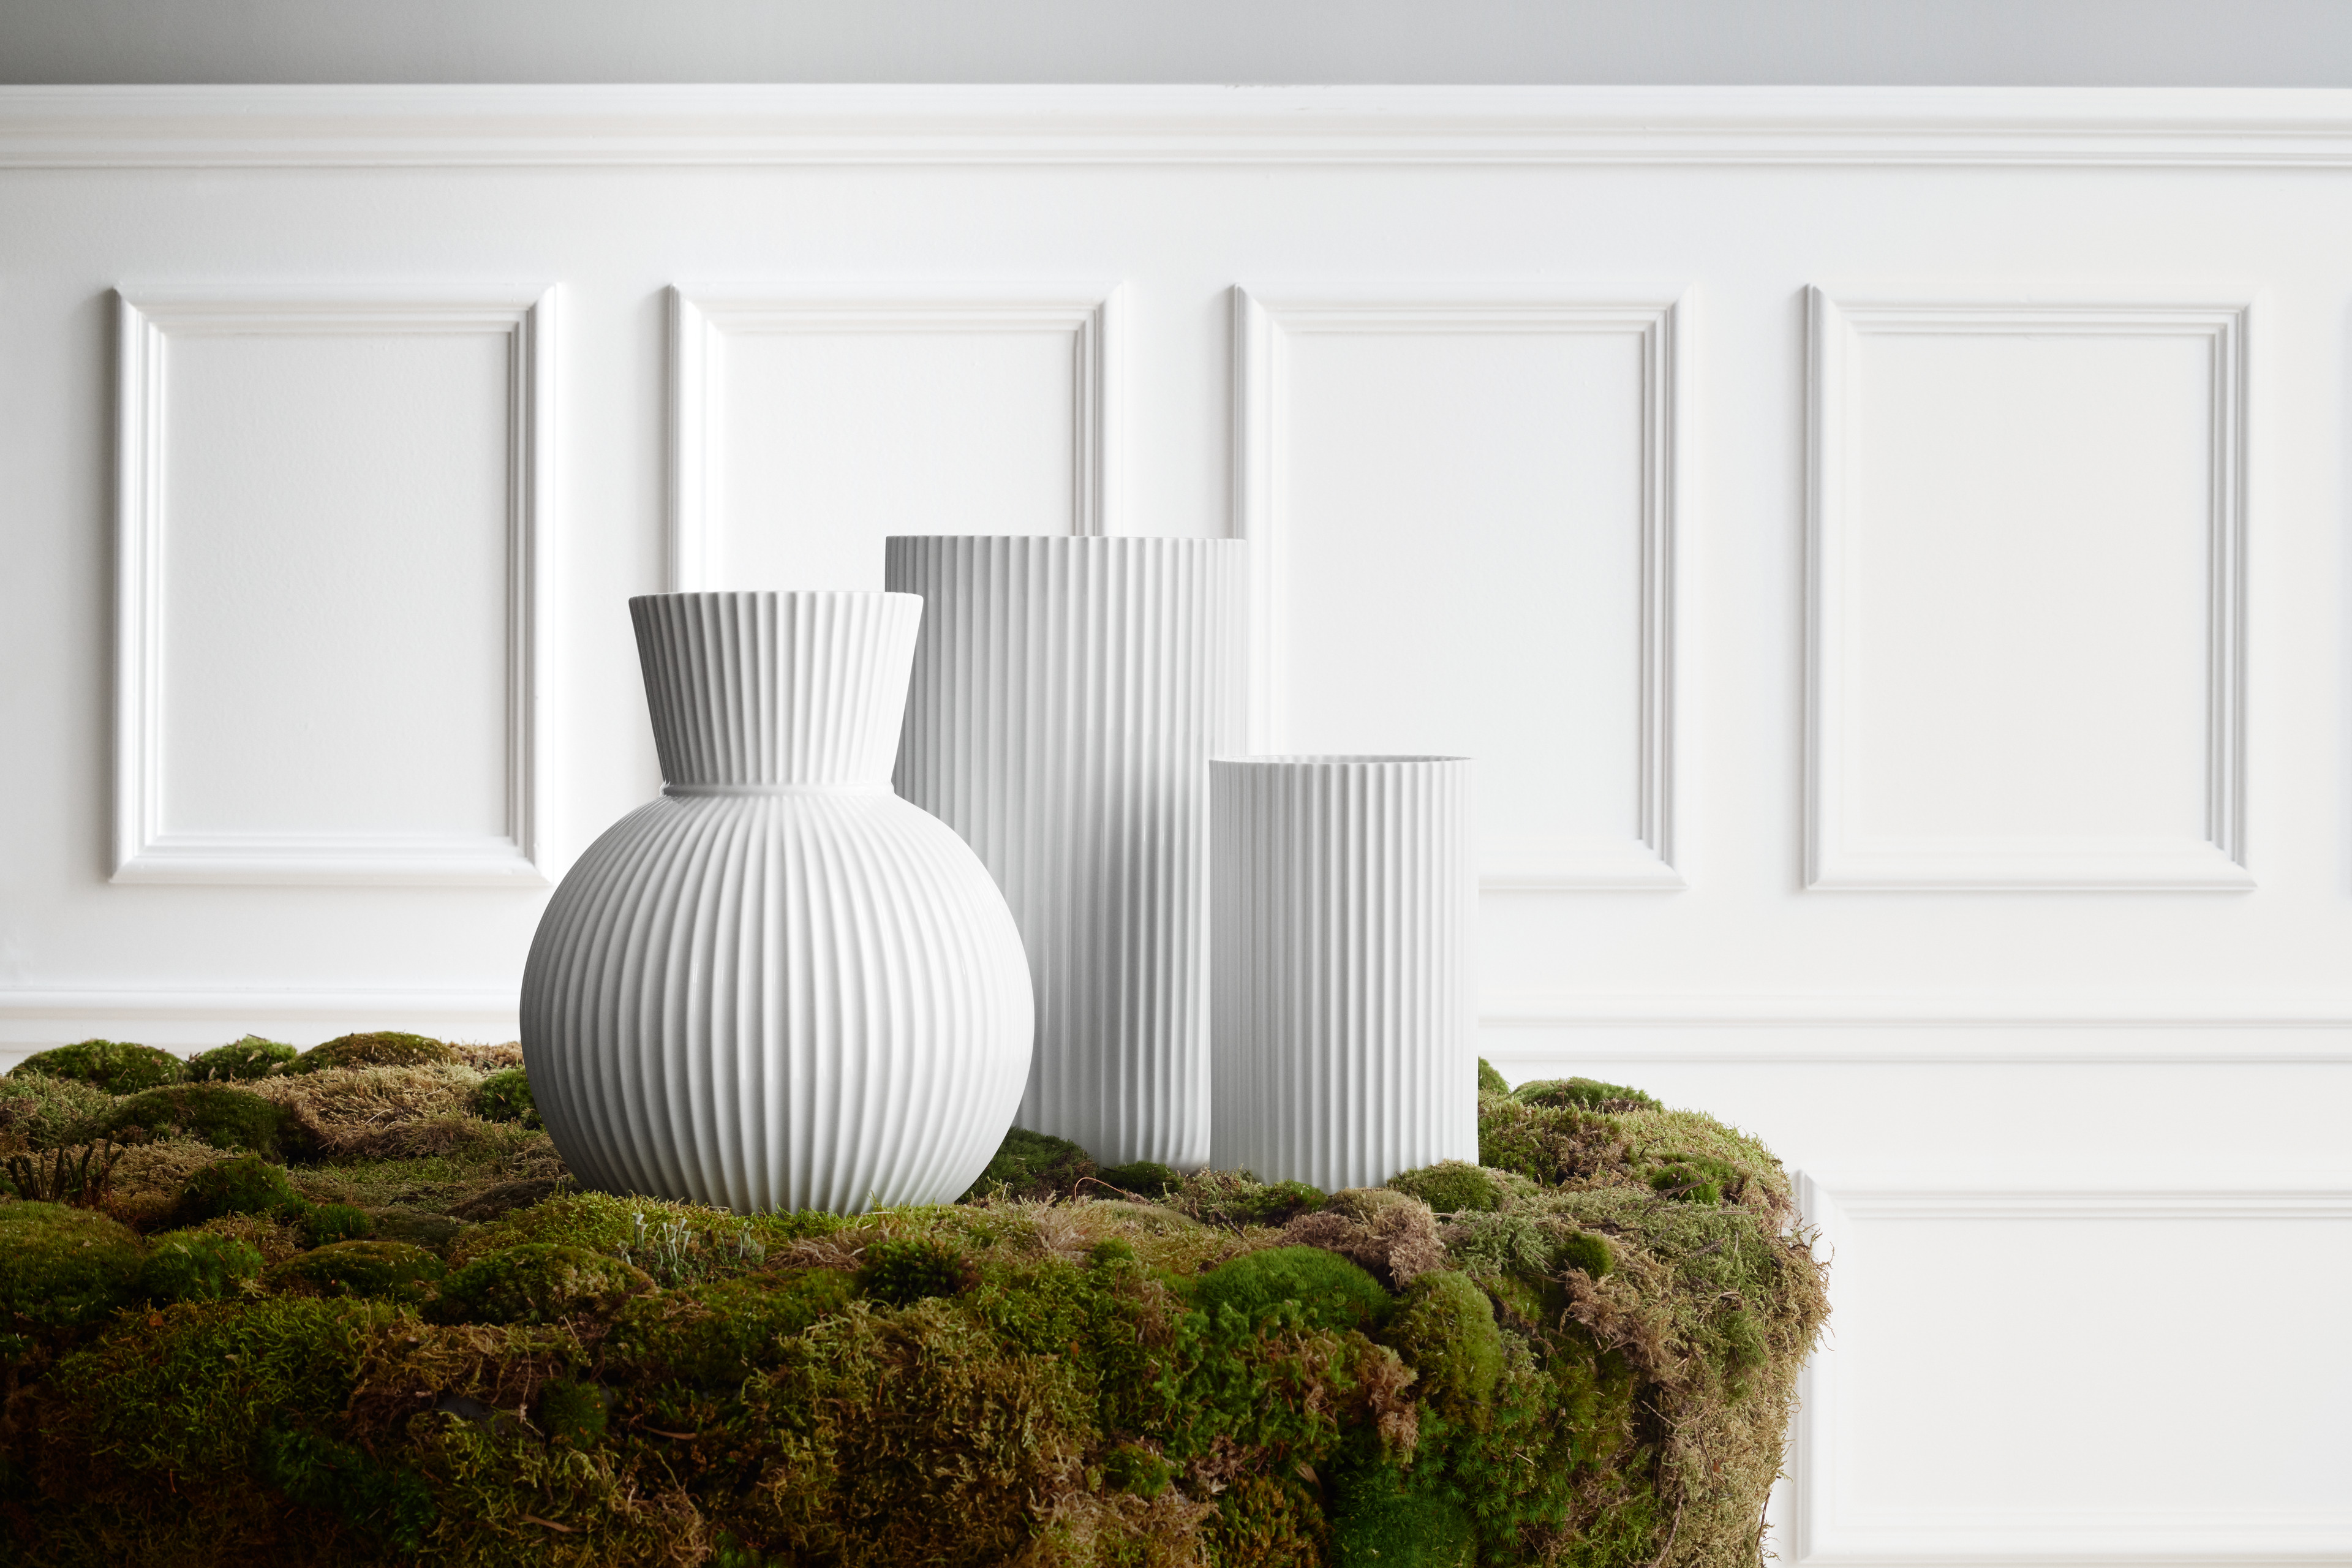 Lyngby Vasen und Tura Vase von Lyngby Porcelain auf Moos